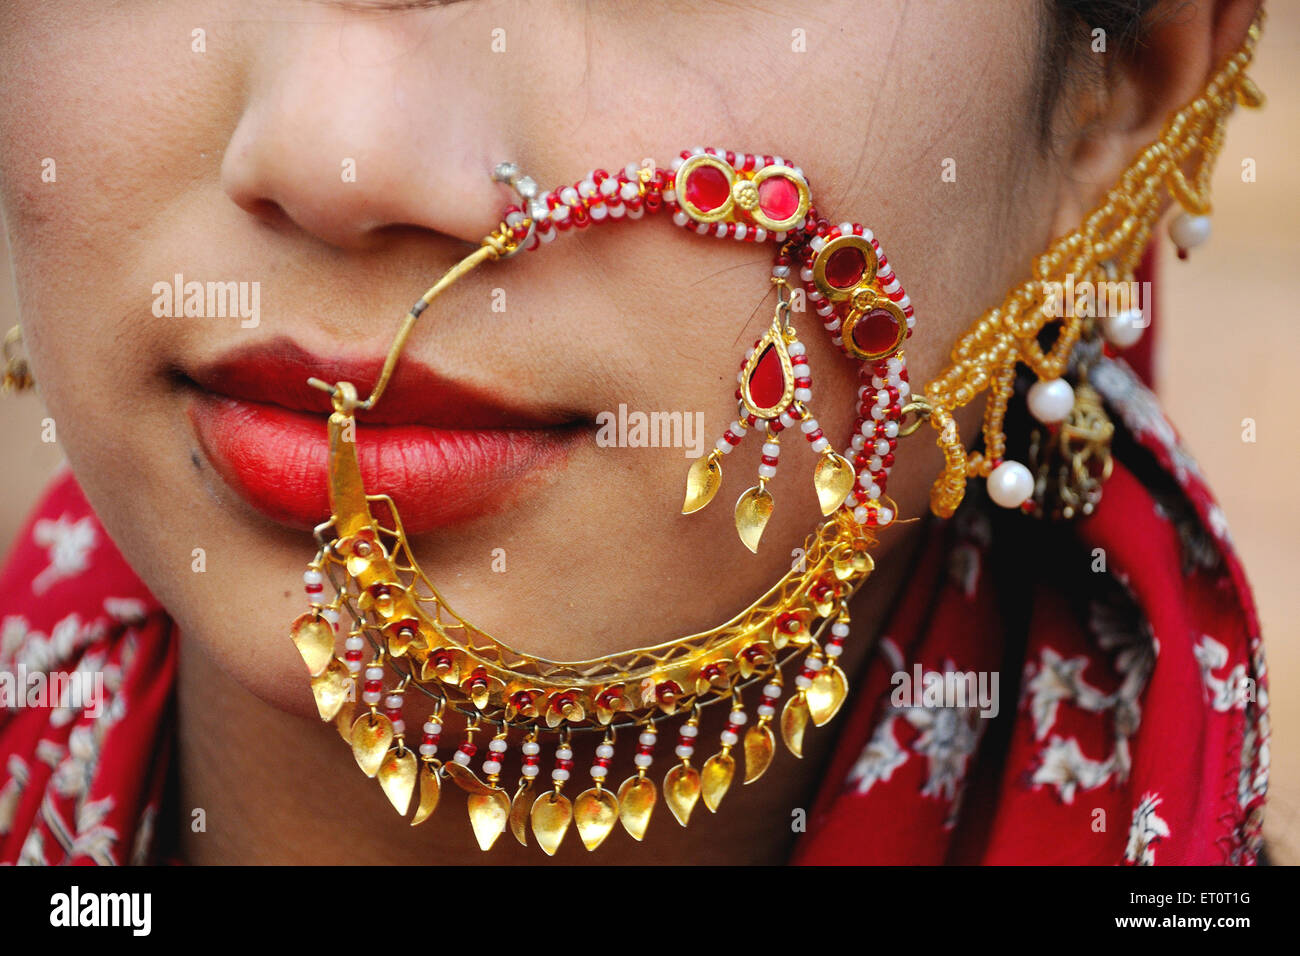 Pin by Nagarajan Krishnan on Nose ring | Nose ring, Rings, Nose